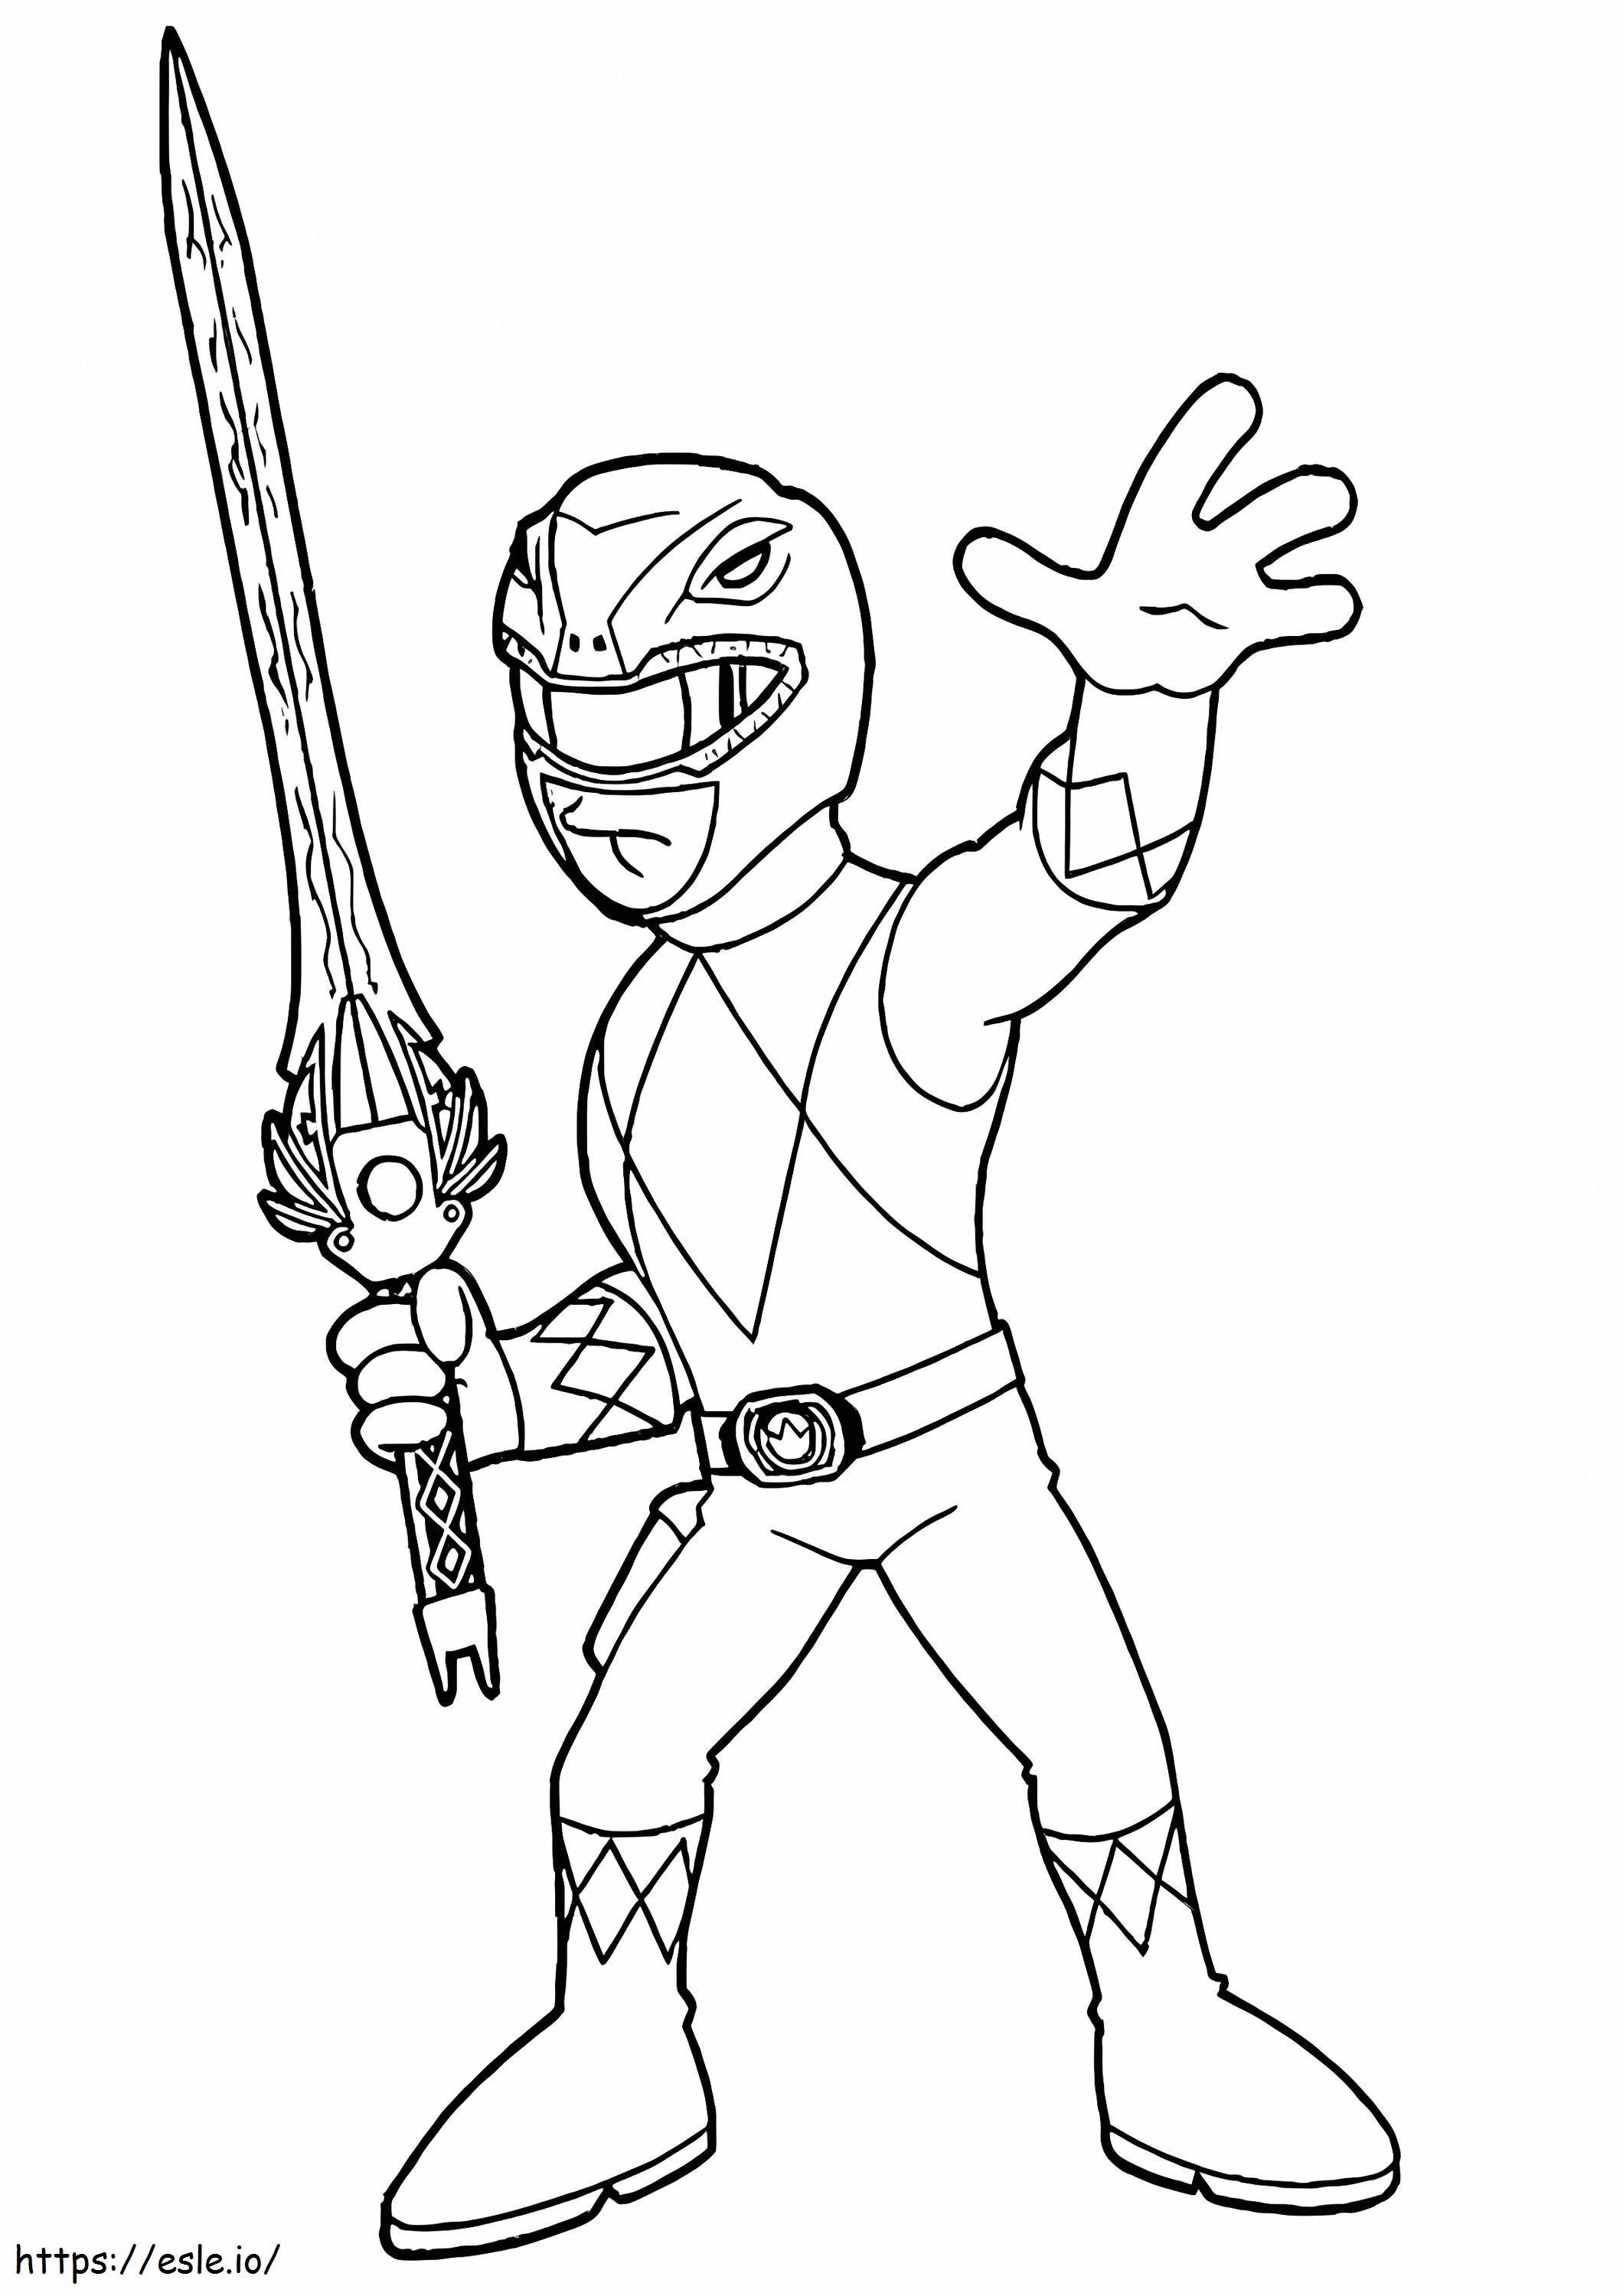 Kılıçlı Power Ranger boyama